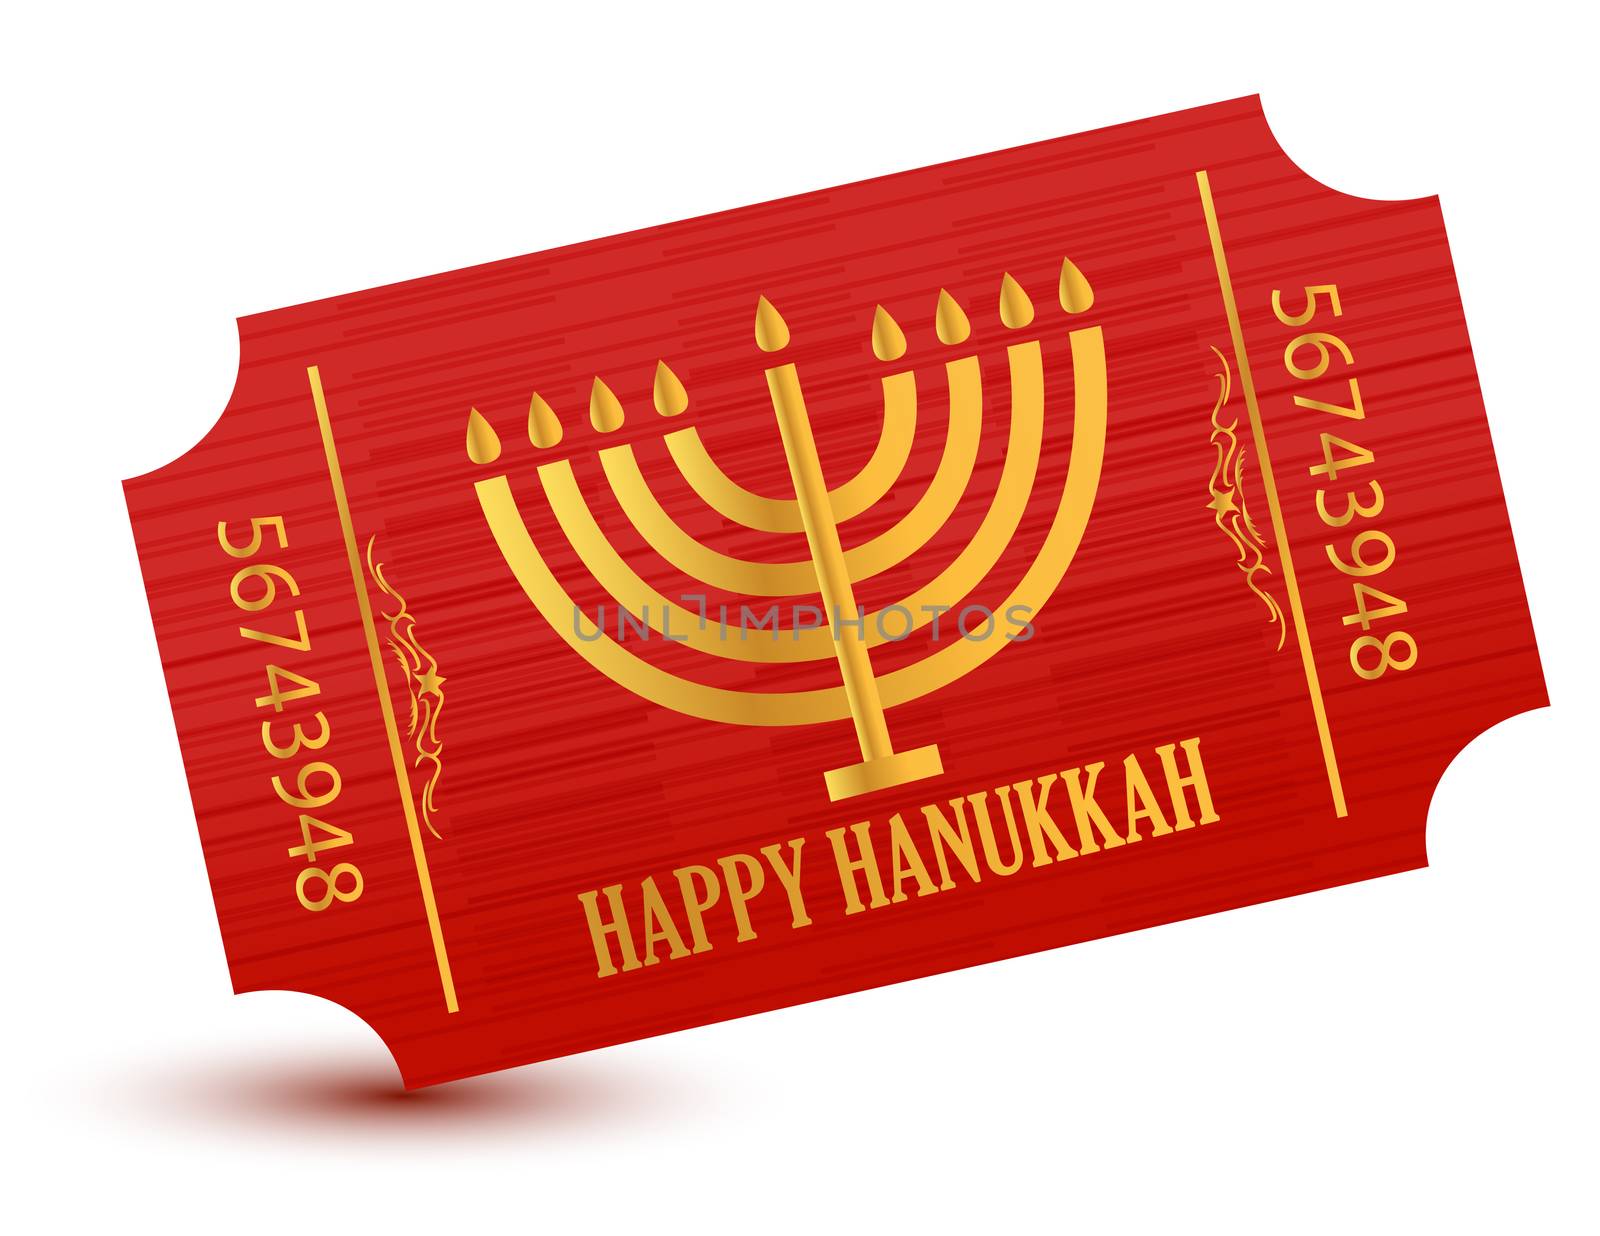 Happy hanukkah event ticket illustration by alexmillos